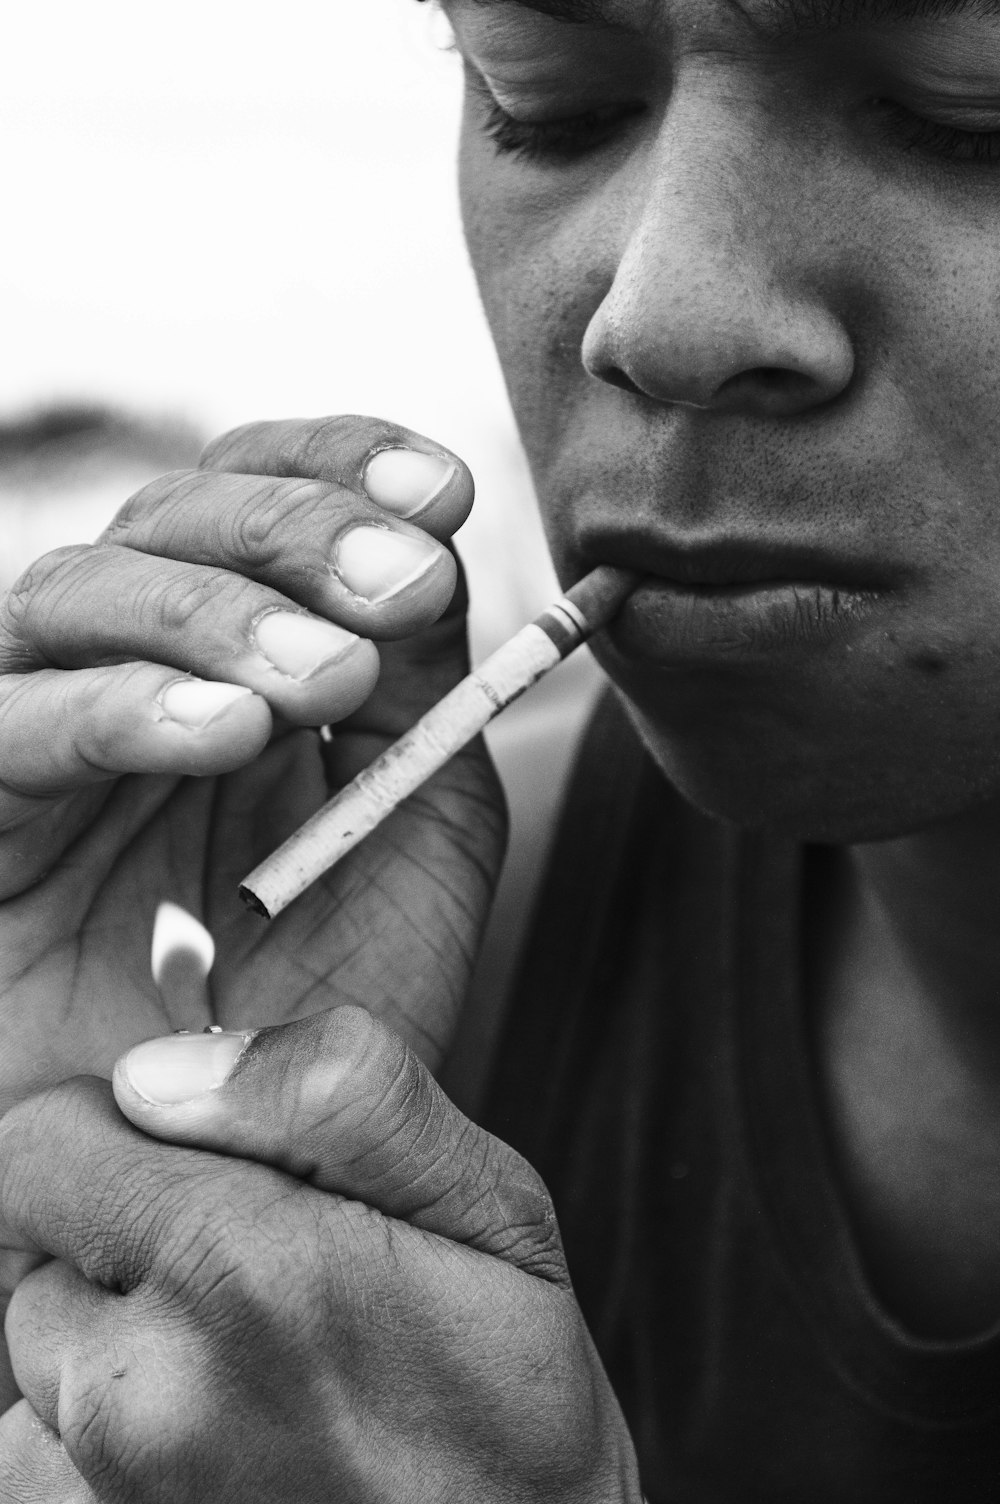 담배를 피우는 남자의 그레이스케일 사진